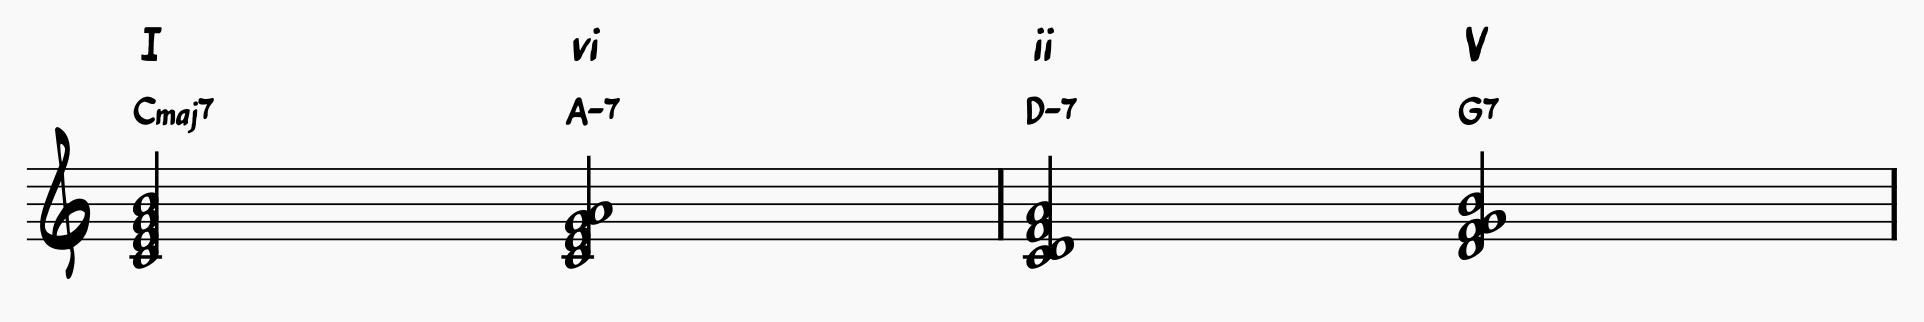 I-vi-ii-V chord progression in C